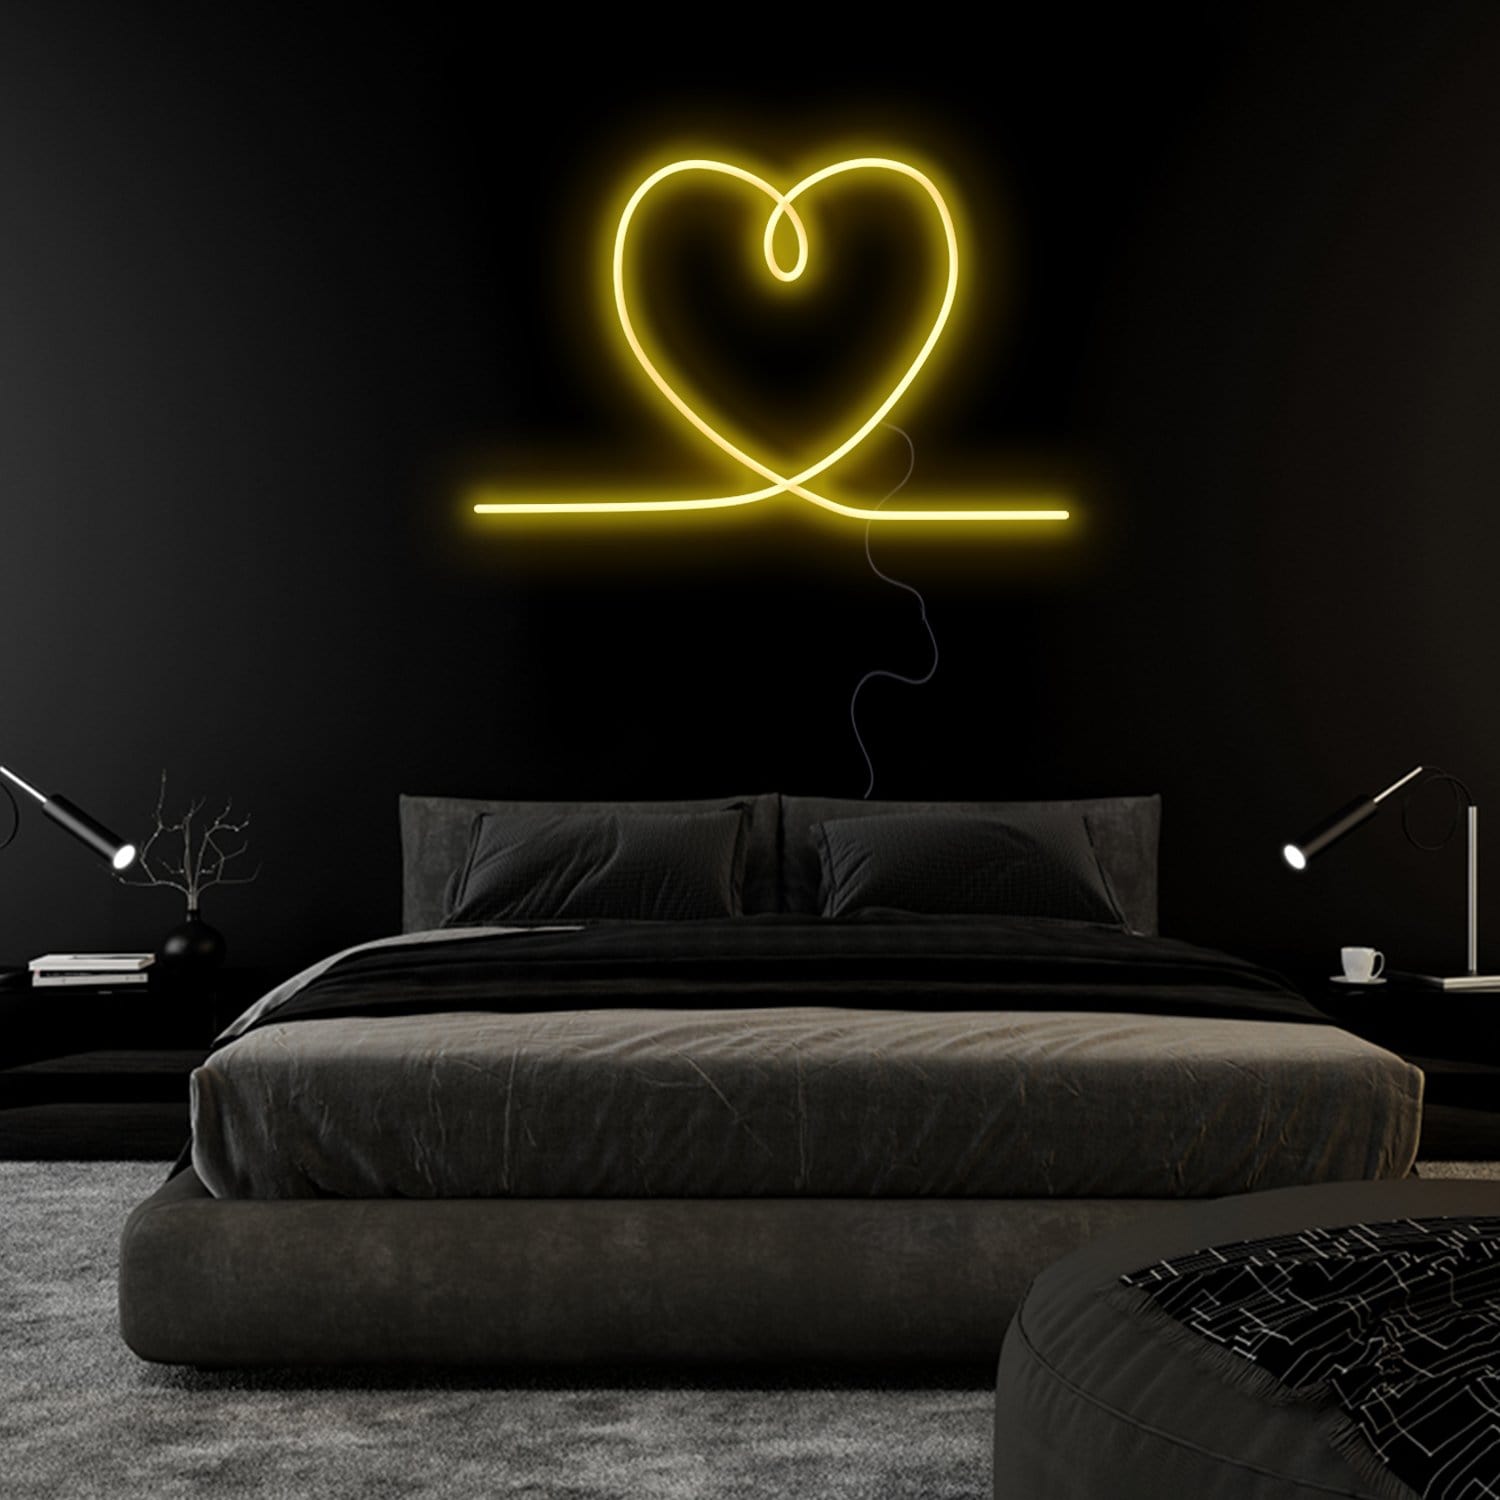 "Herz Heart" LED Neonschild Sign Schriftzug - NEONEVERGLOW